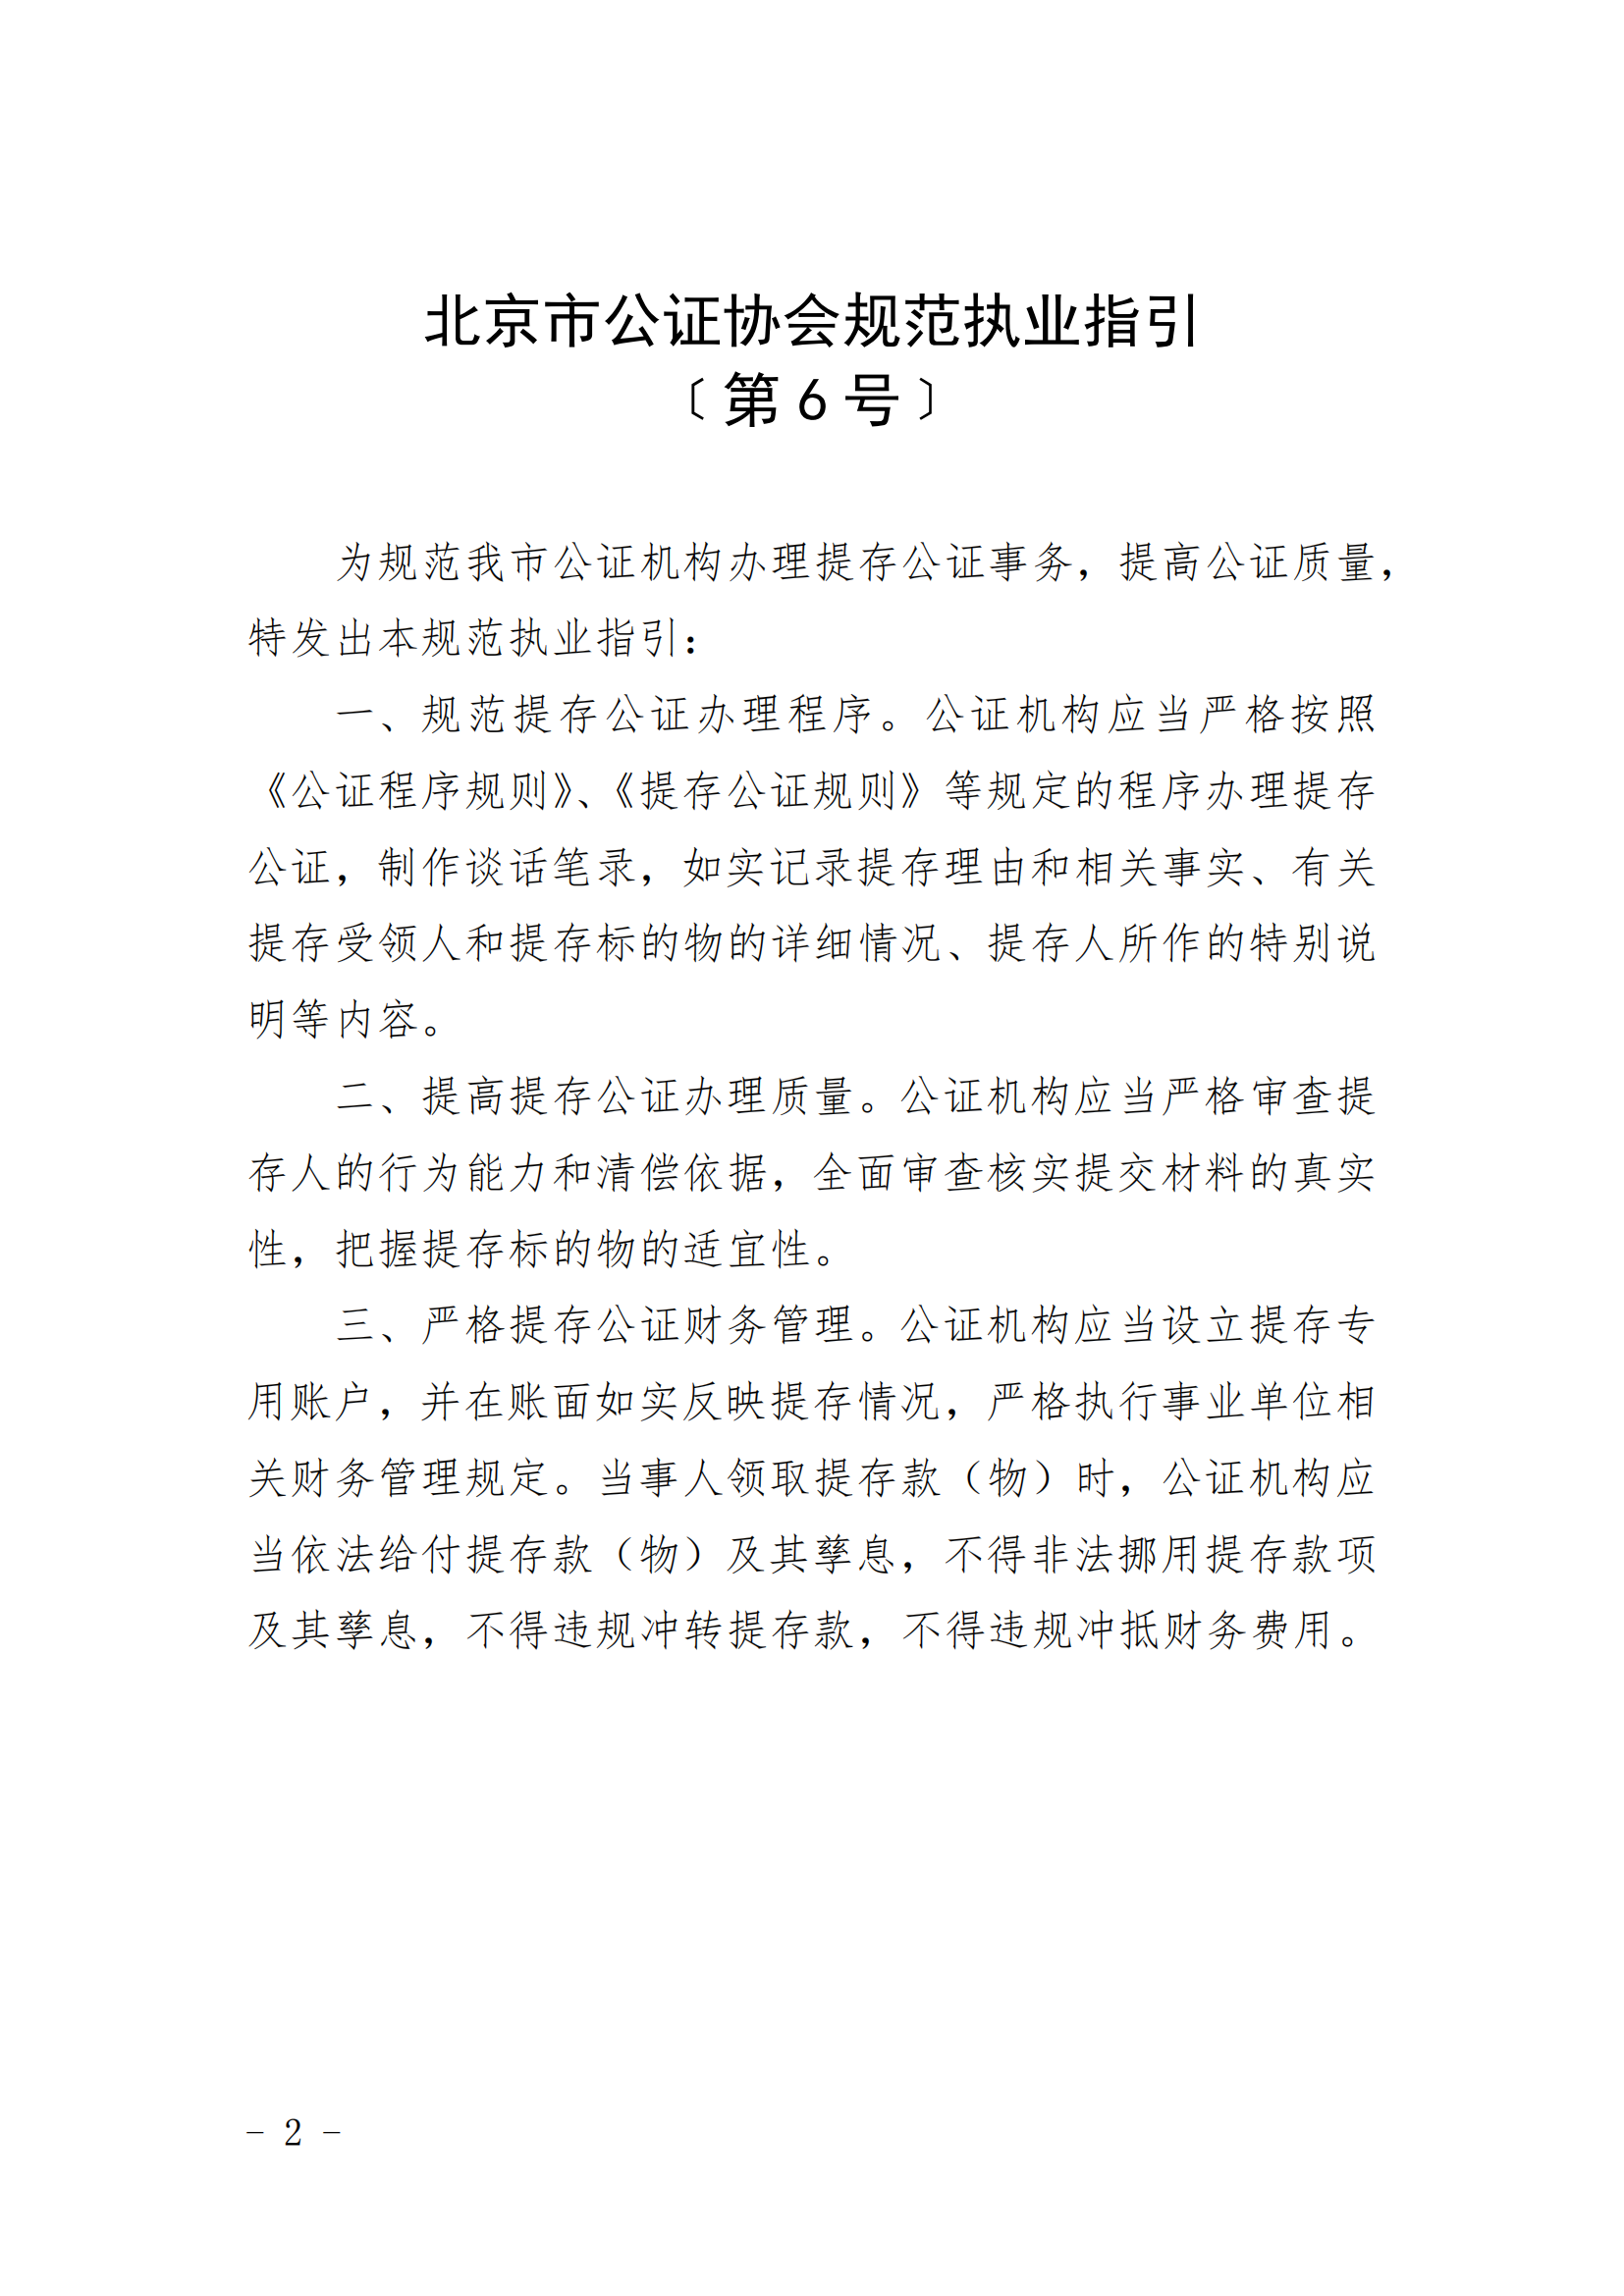 6、北京市公证协会关于印发《北京市公证协会规范执业指引》第5号的通知_01